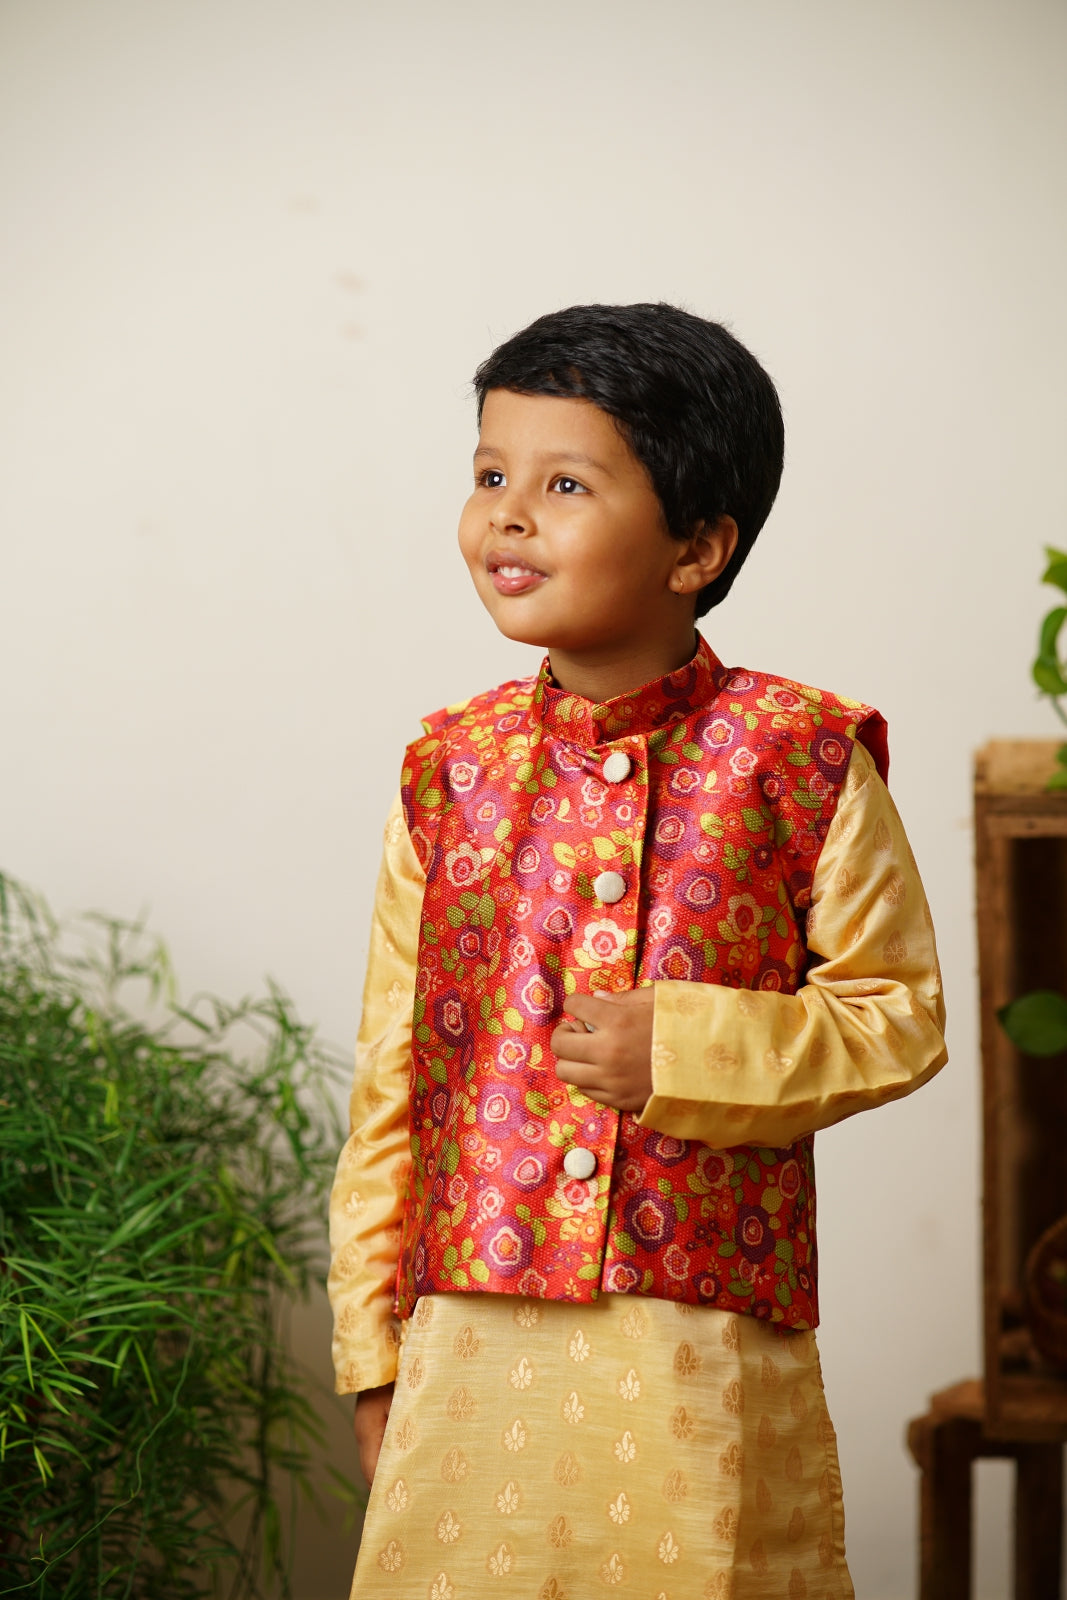 orange floral traditional ethnic brocade printed silk cotton kurta pyjama salwar suit pajama churidar set sherwani jacket for baby boy kids 